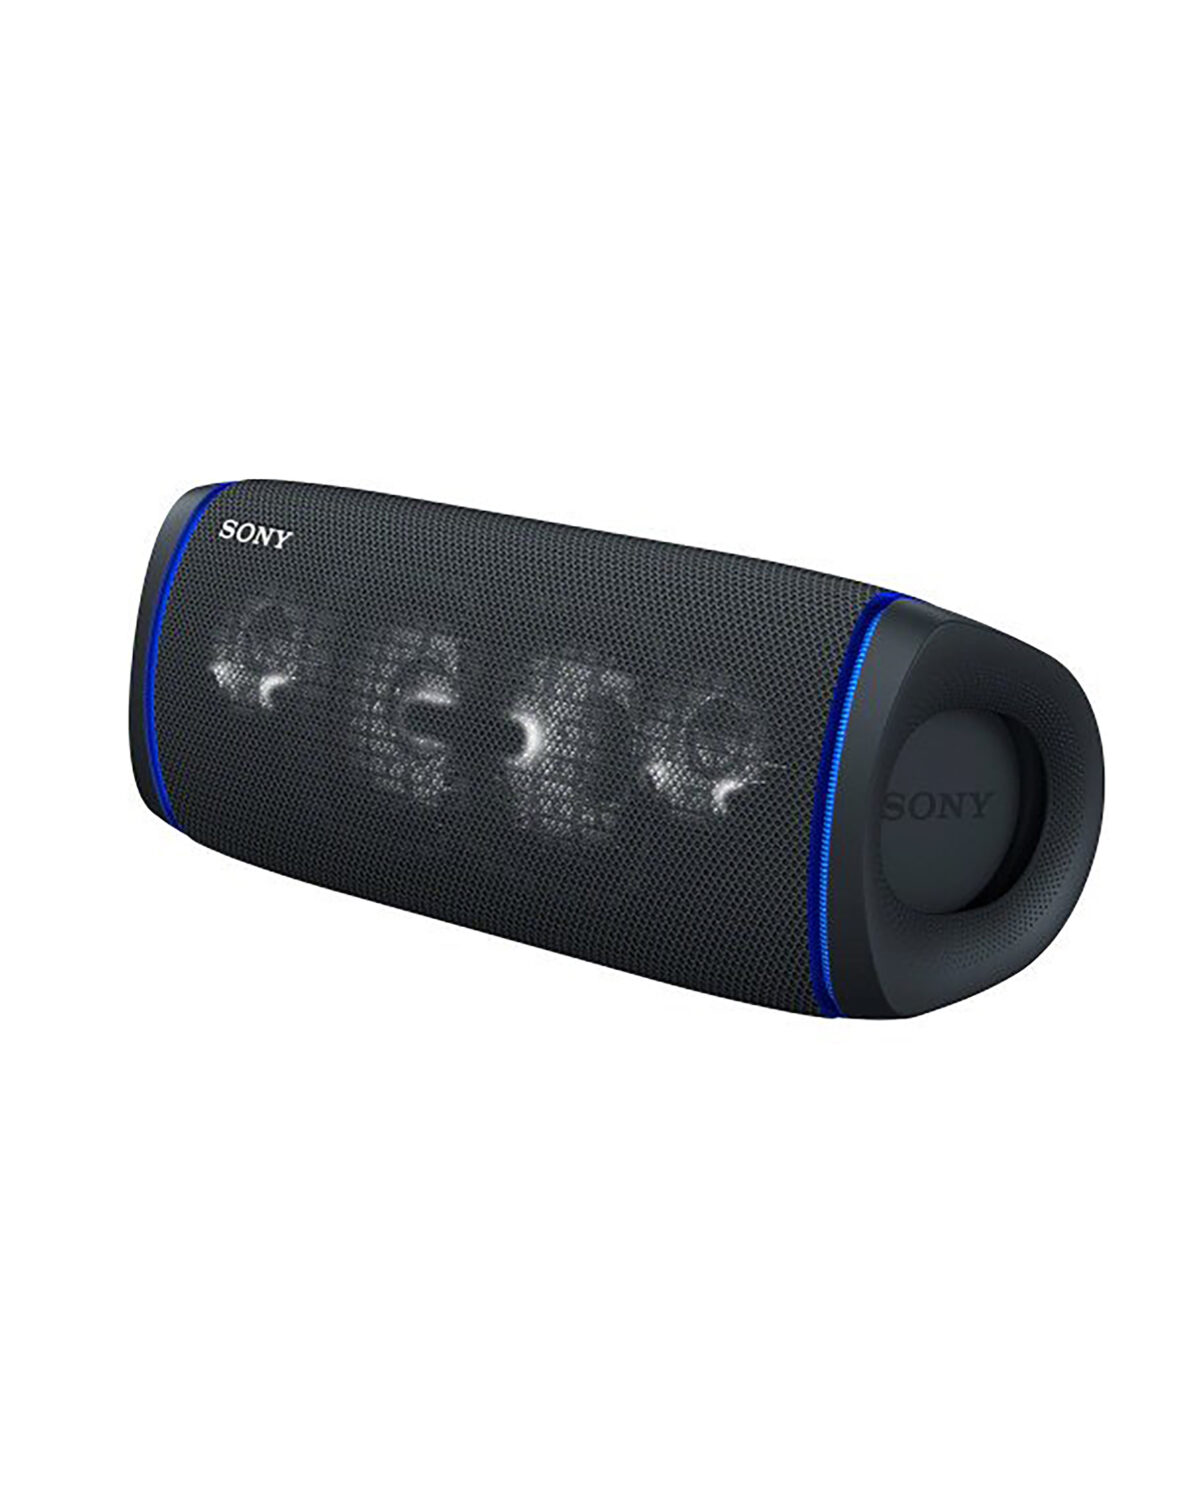 Sony SRS-XB43 EXTRA BASS Wireless Bluetooth Powerful